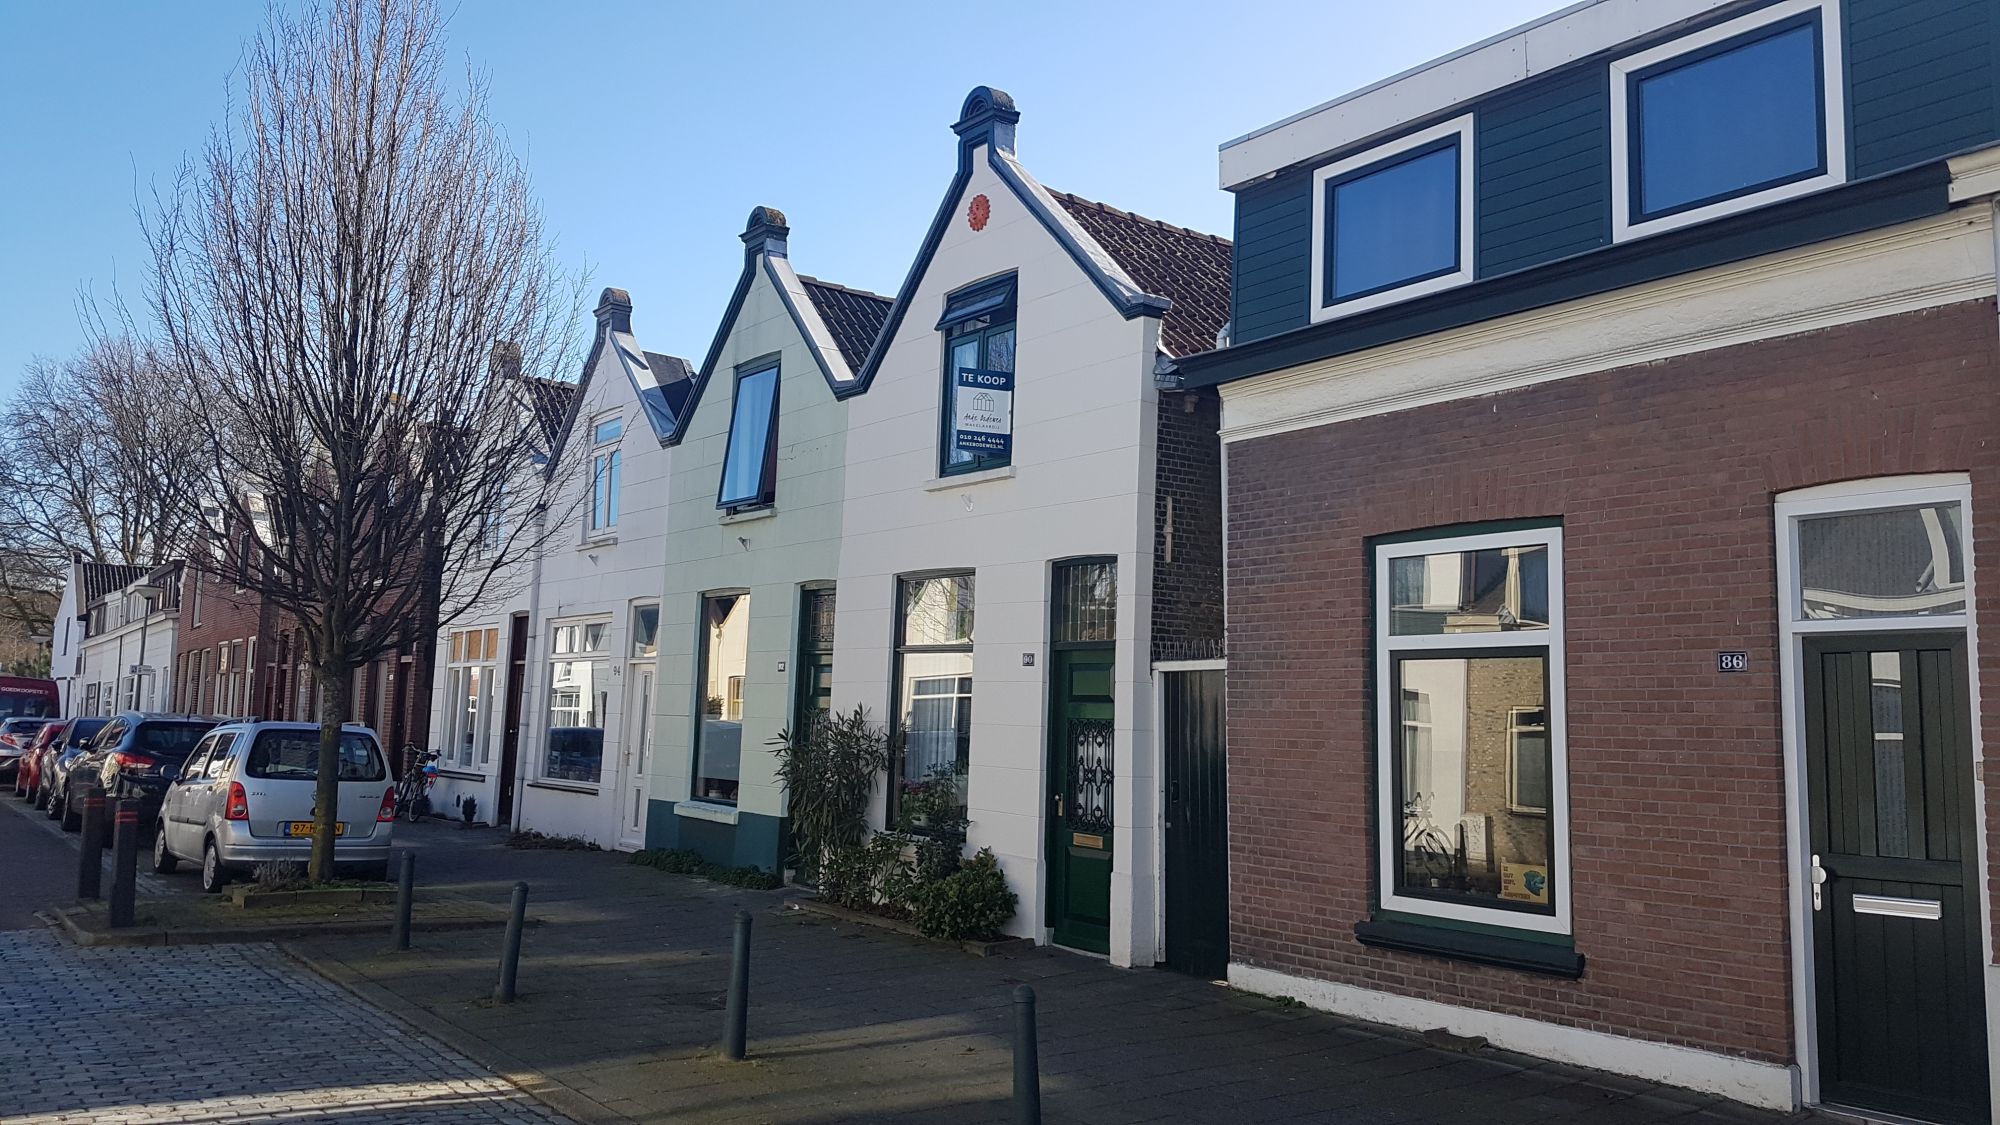 Prijs woning daalt in Schiedam minder dan landelijk